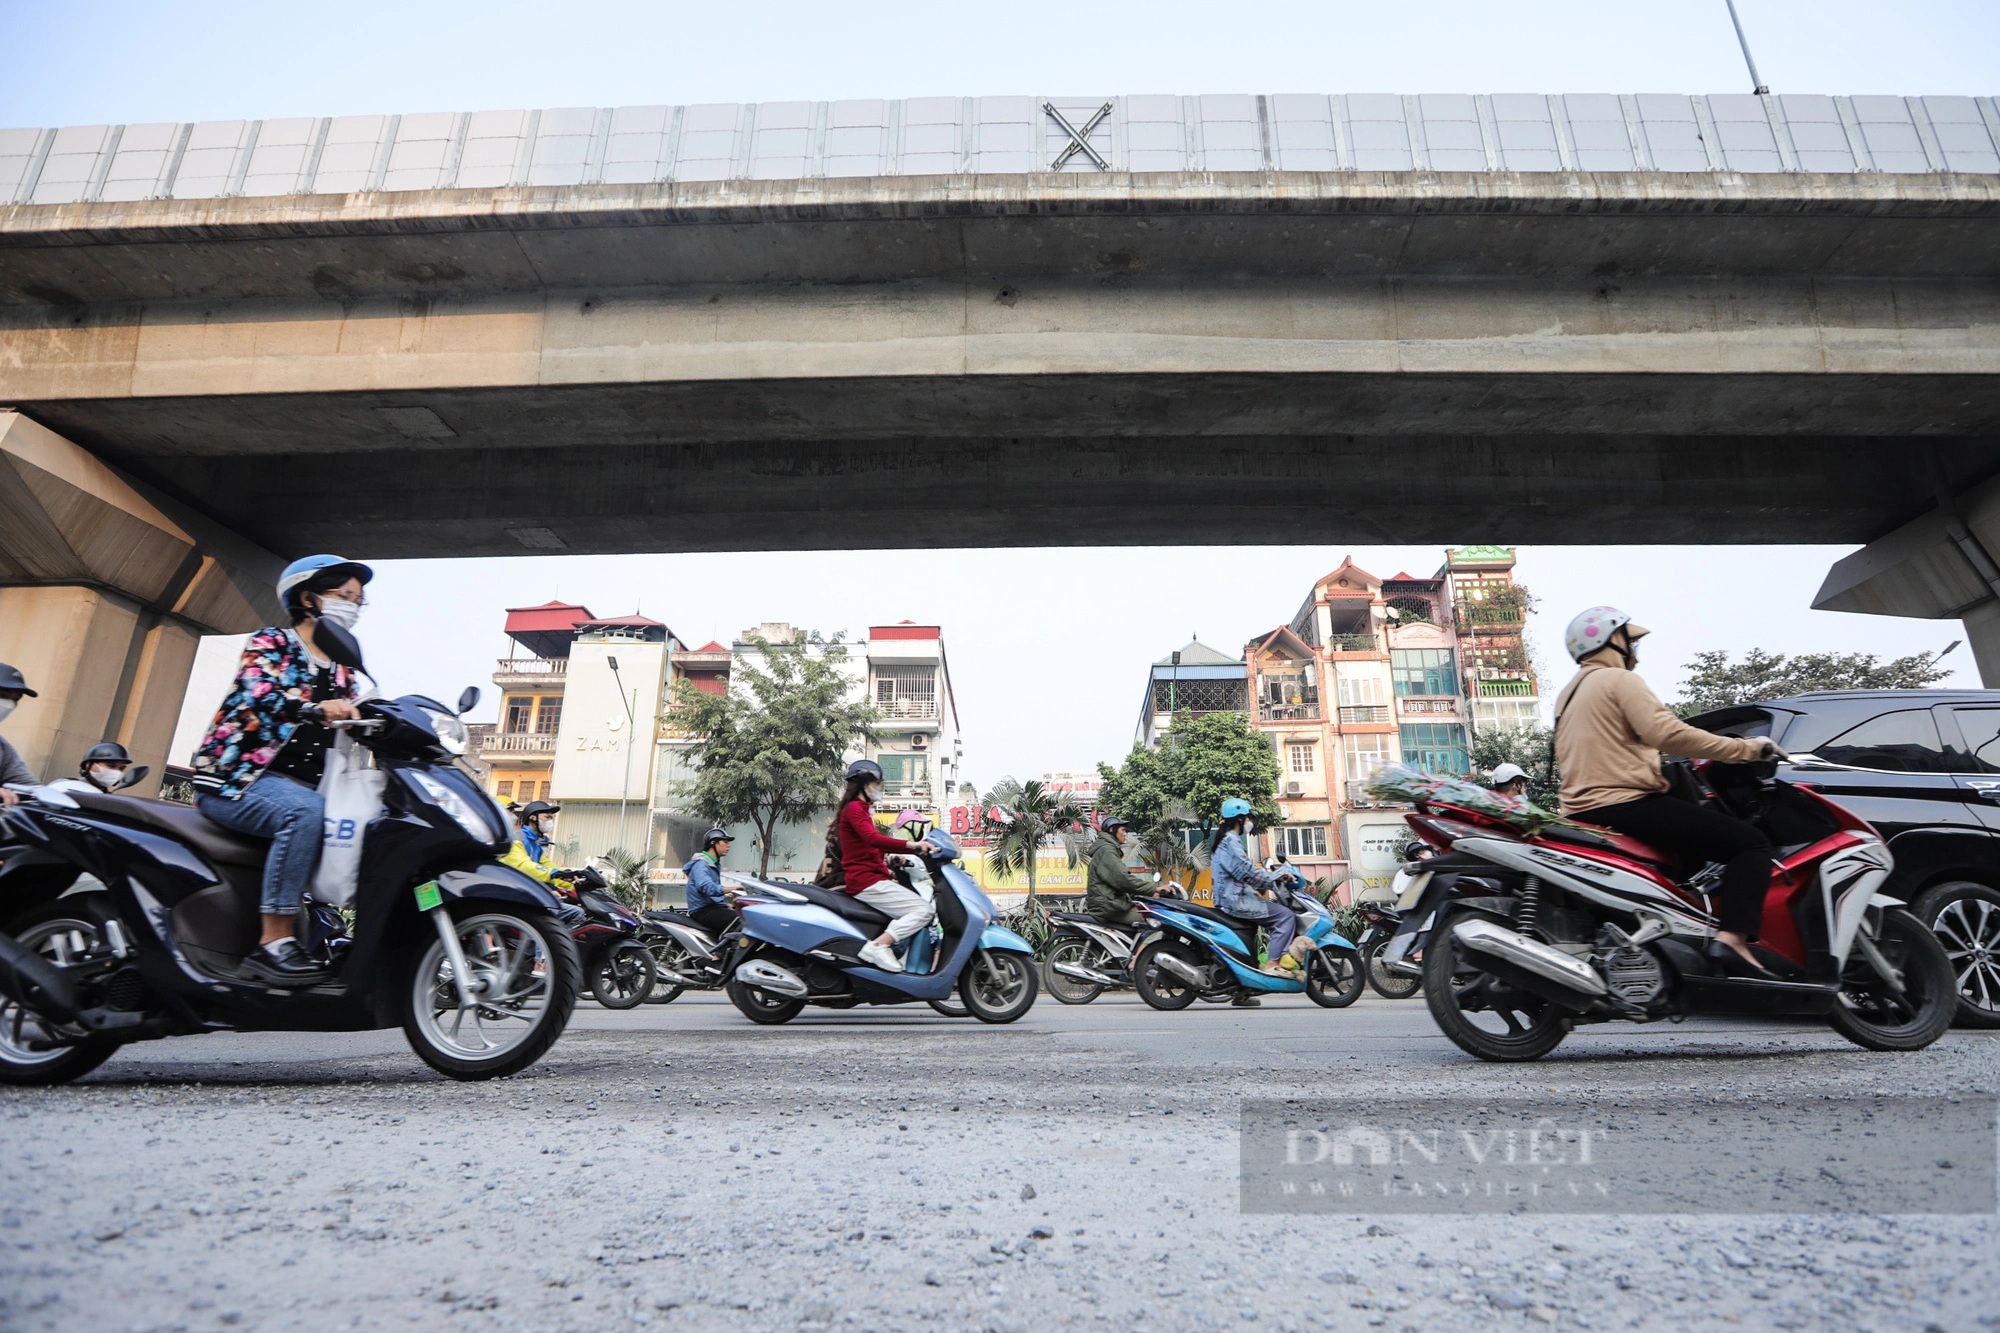 Bụi bay mịt mù, người dân chật vật đi qua nút giao thông 4 tầng ở Hà Nội - Ảnh 8.